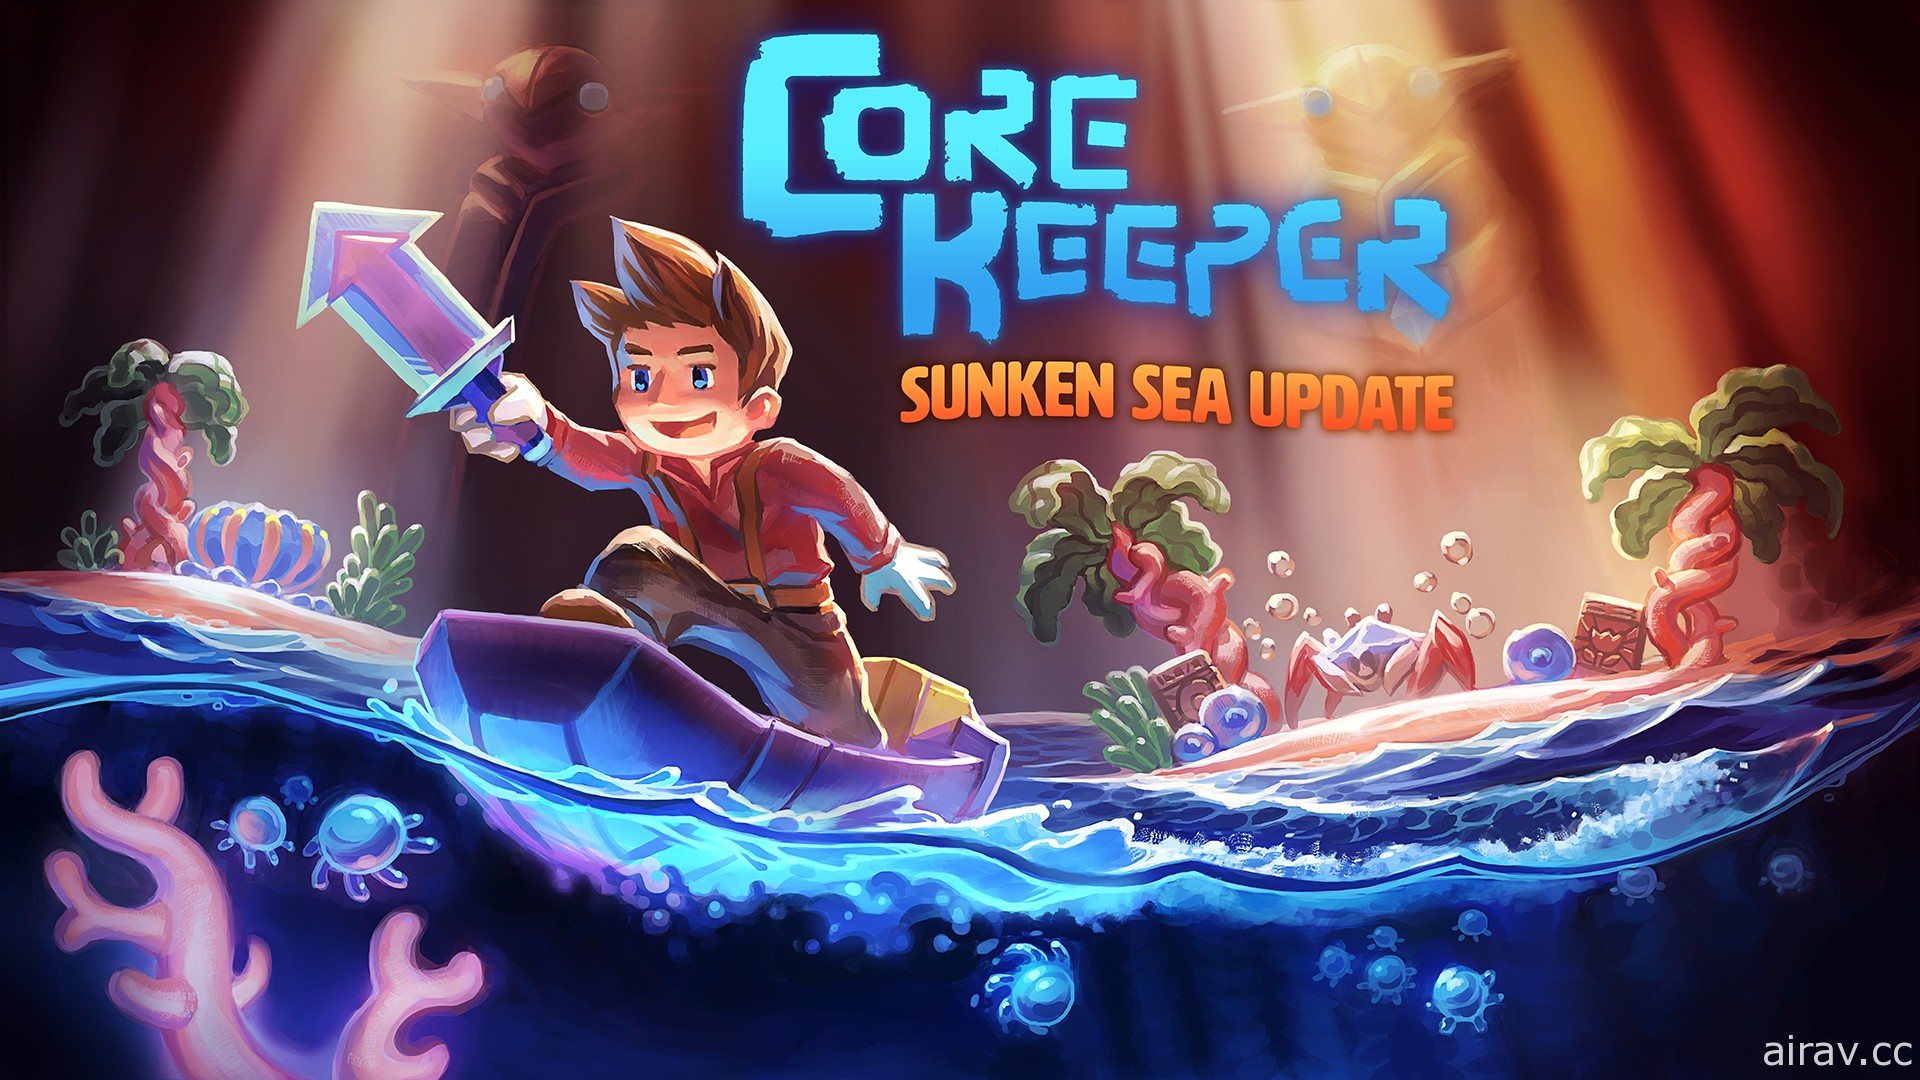 《Core Keeper》更新內容「沉沒之海」將於 6/15 正式上架